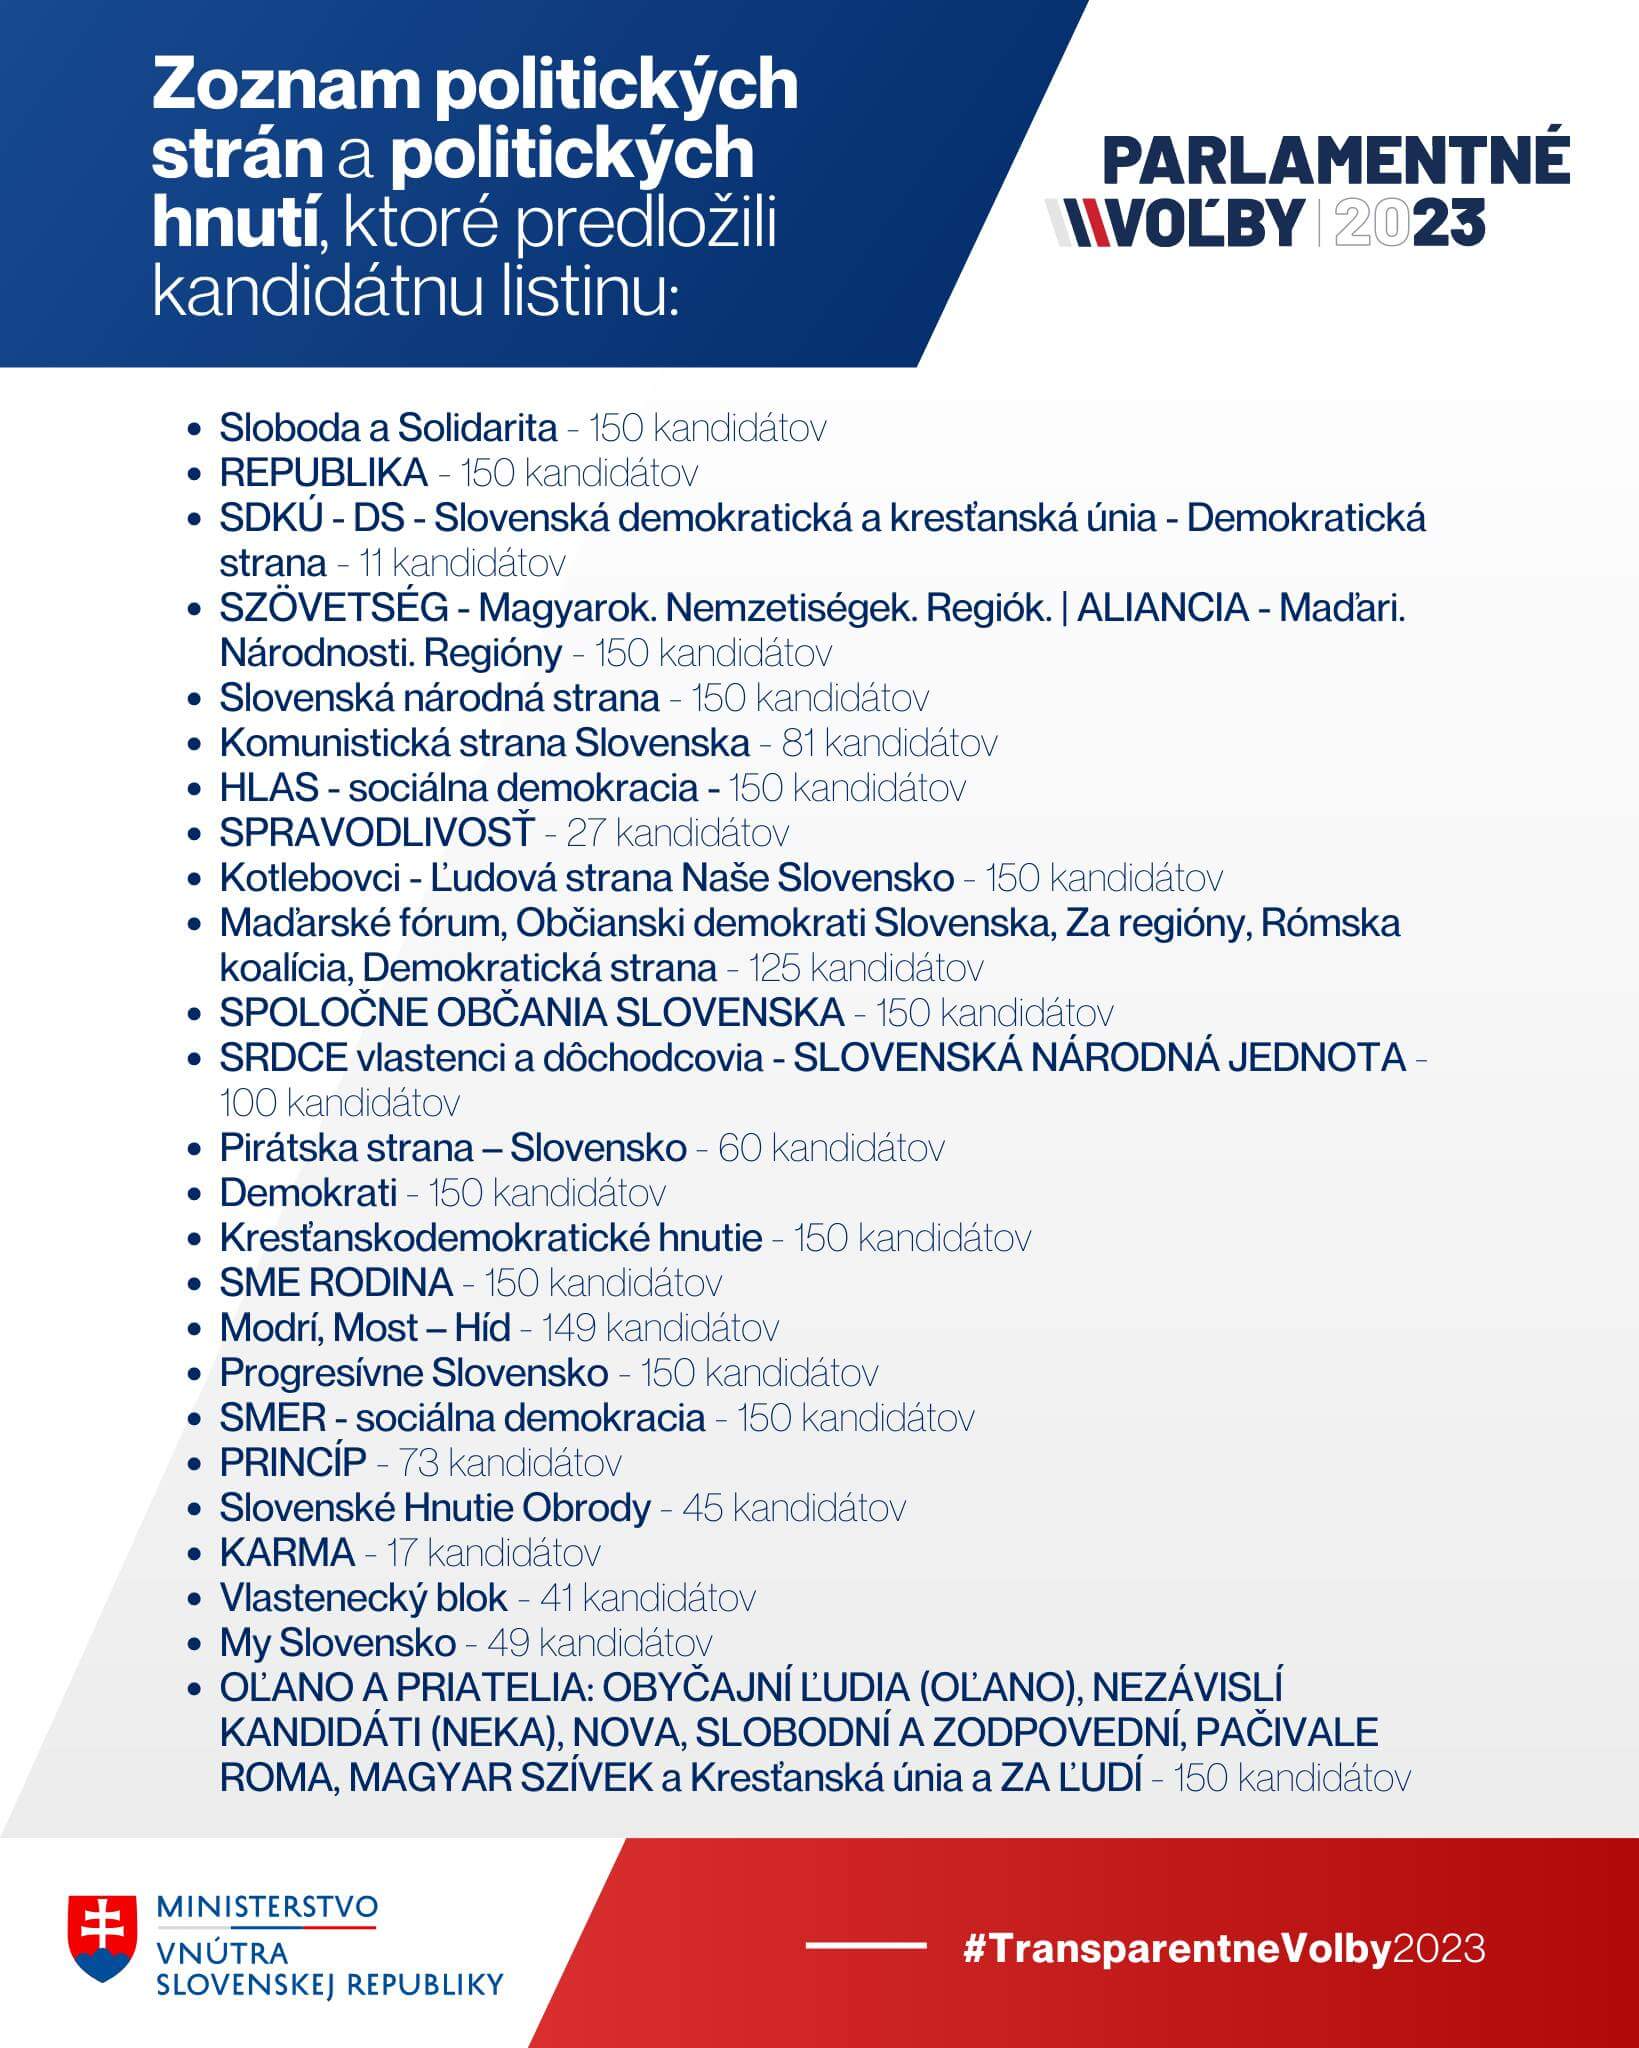 Zoznam kandidujúcich politických strán na Slovensku 